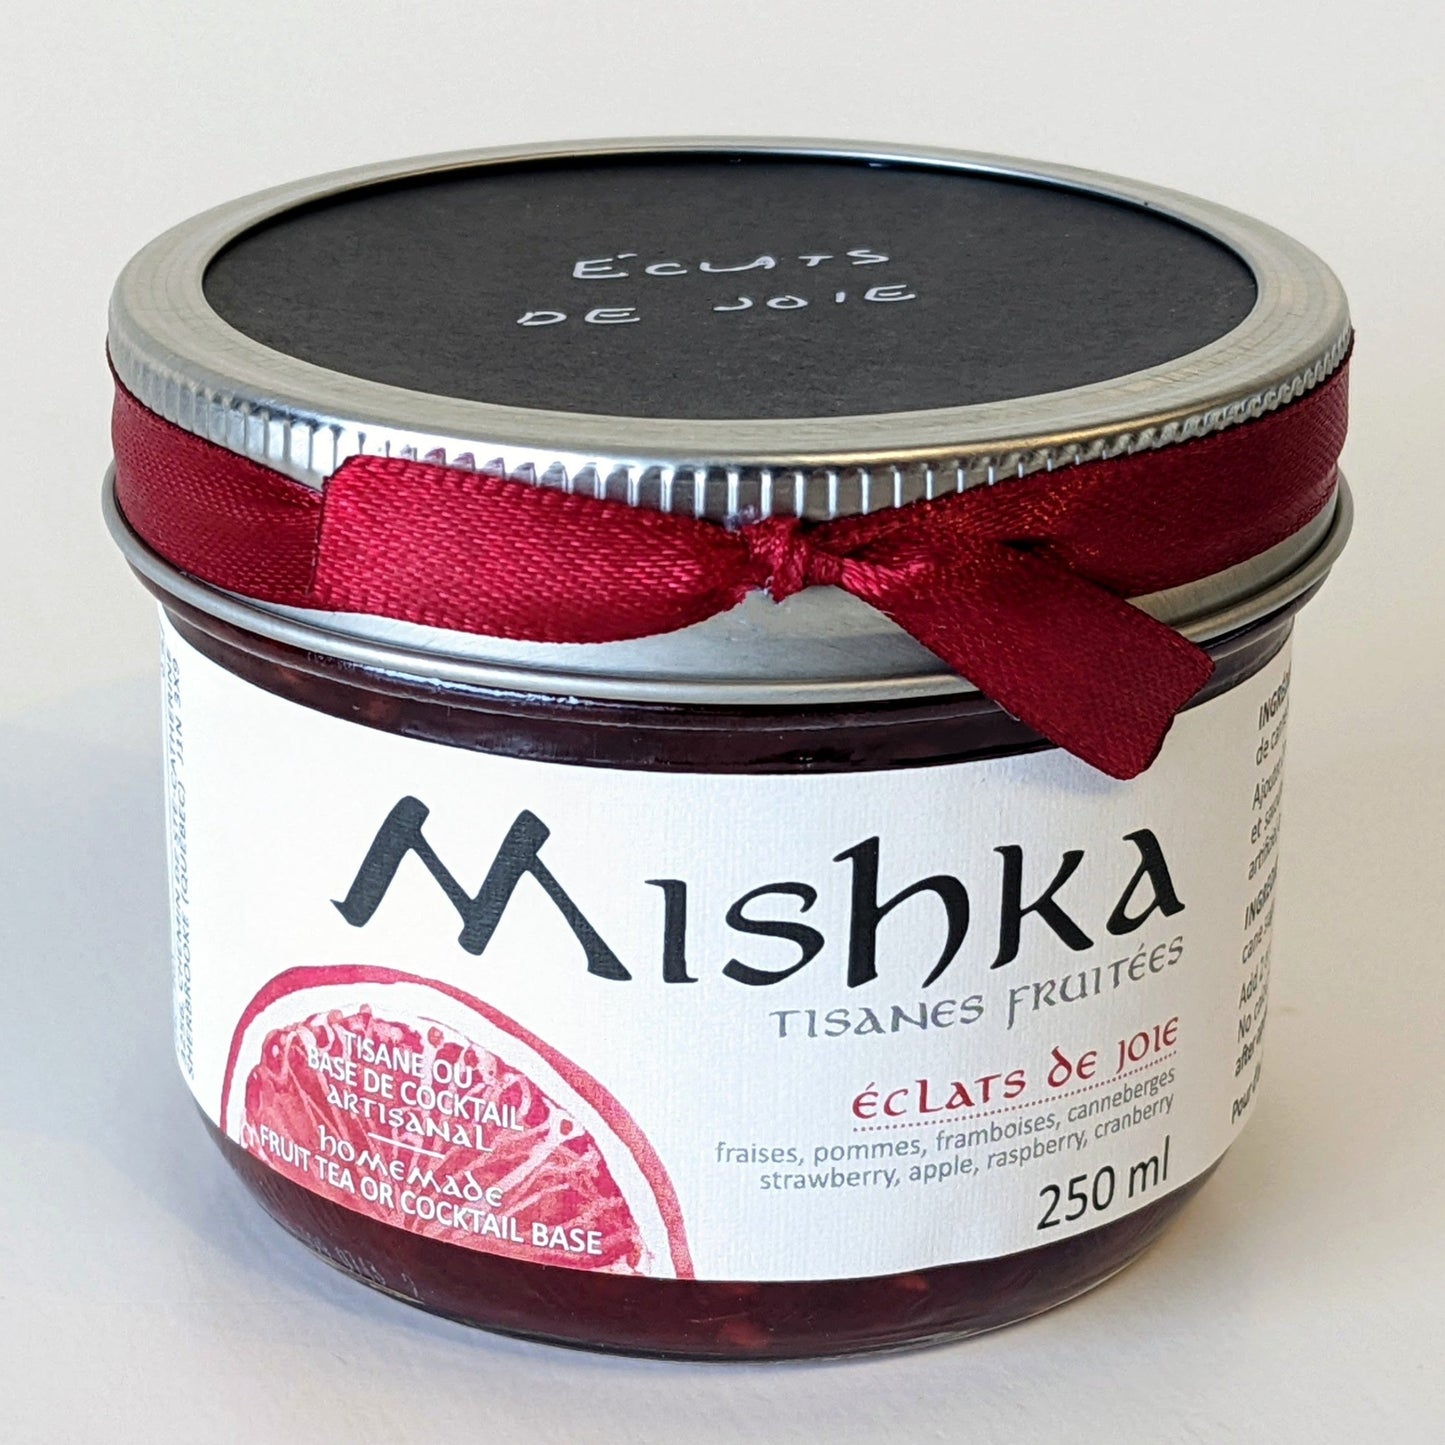 Mishka - Éclats de joie